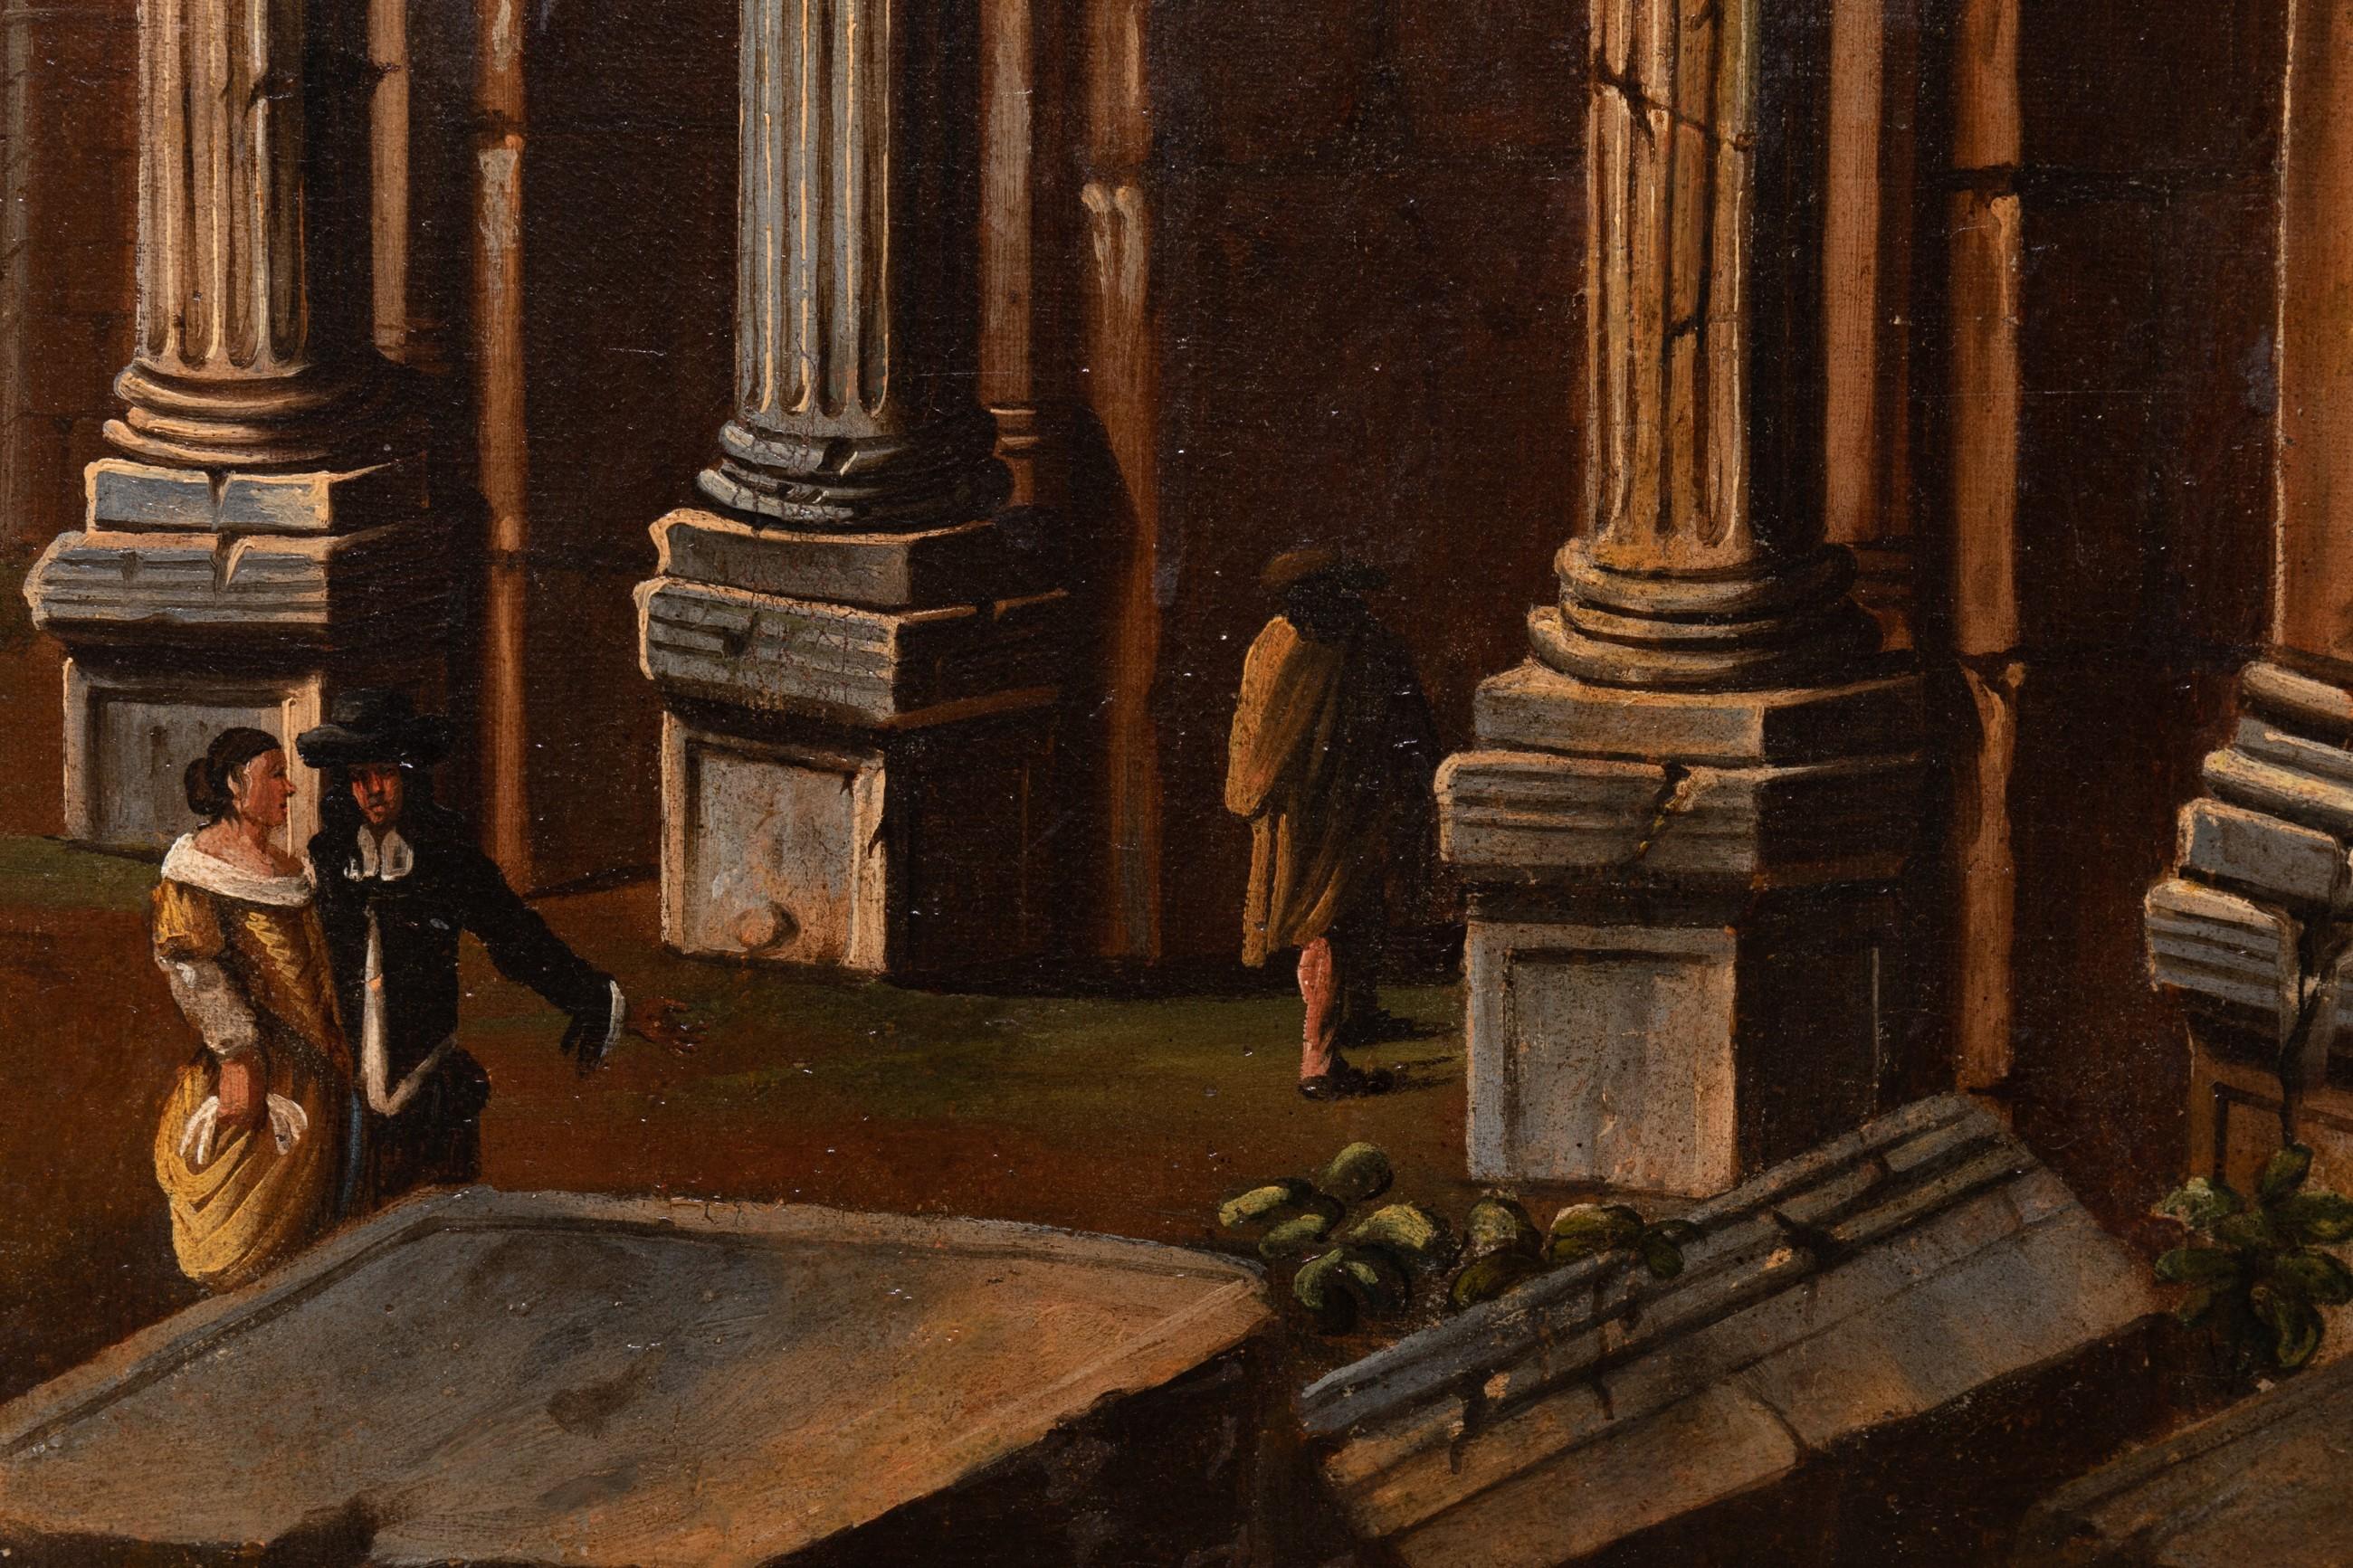 Un capriccio avec le Colisée de Rome
École italienne du 17e siècle
Cercle de Viviano Codazzi (1604-1670)
Huile sur toile
Dimensions : h. 35.43 in, w. 51.18 in
Cadre moderne de style XVIIe siècle avec décor 